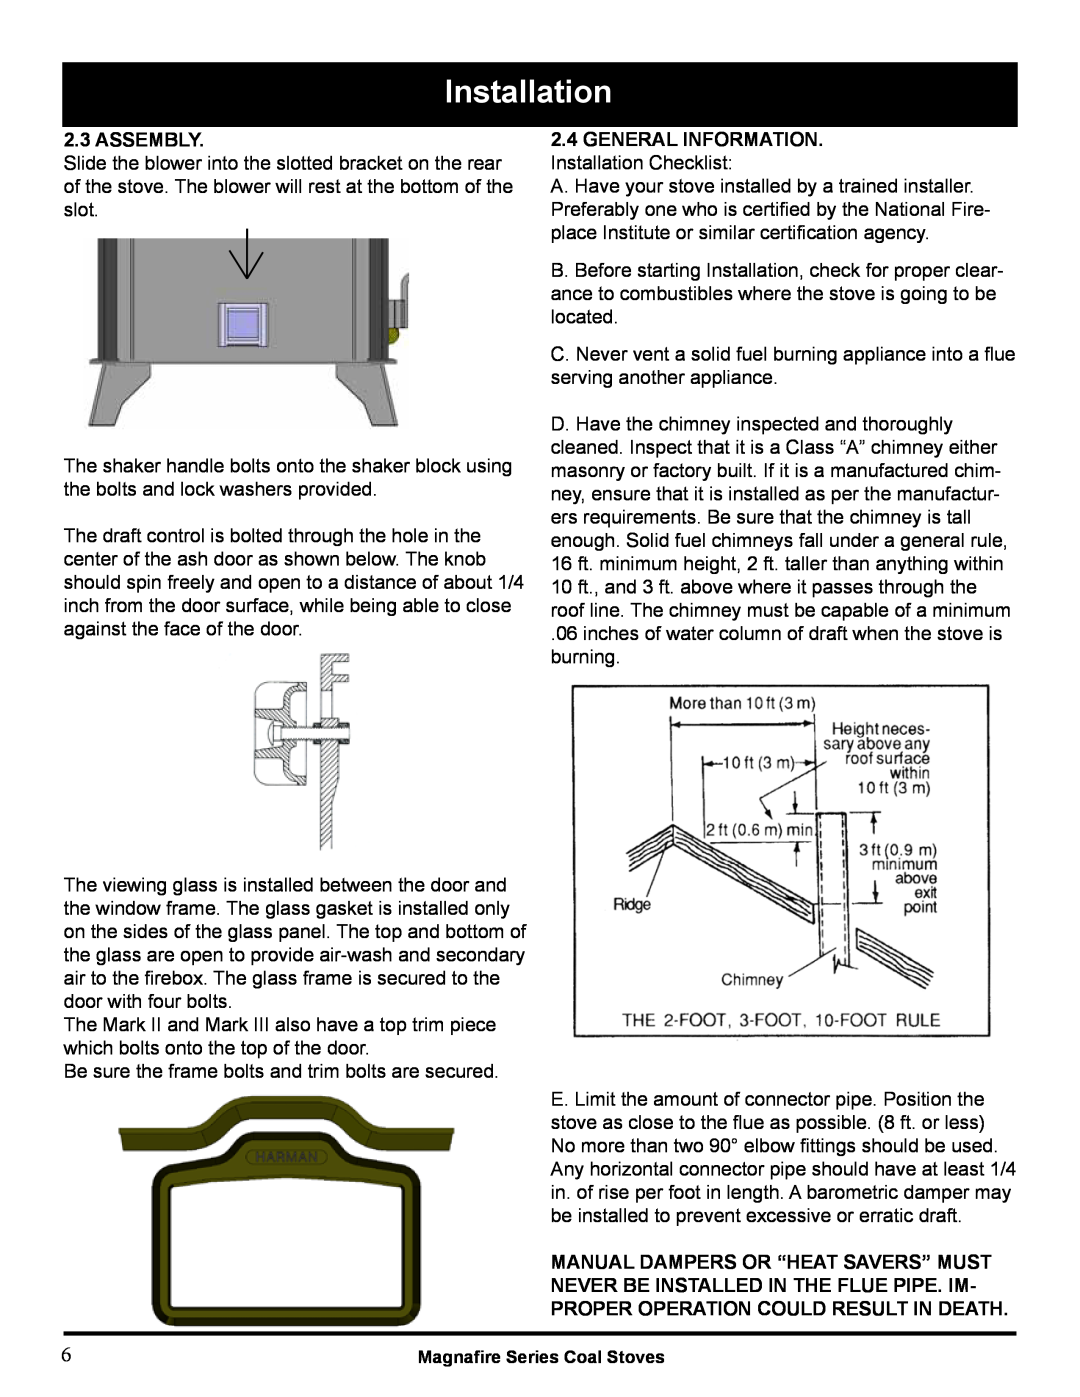 Harman Stove Company MARK III manual Installation, Assembly 